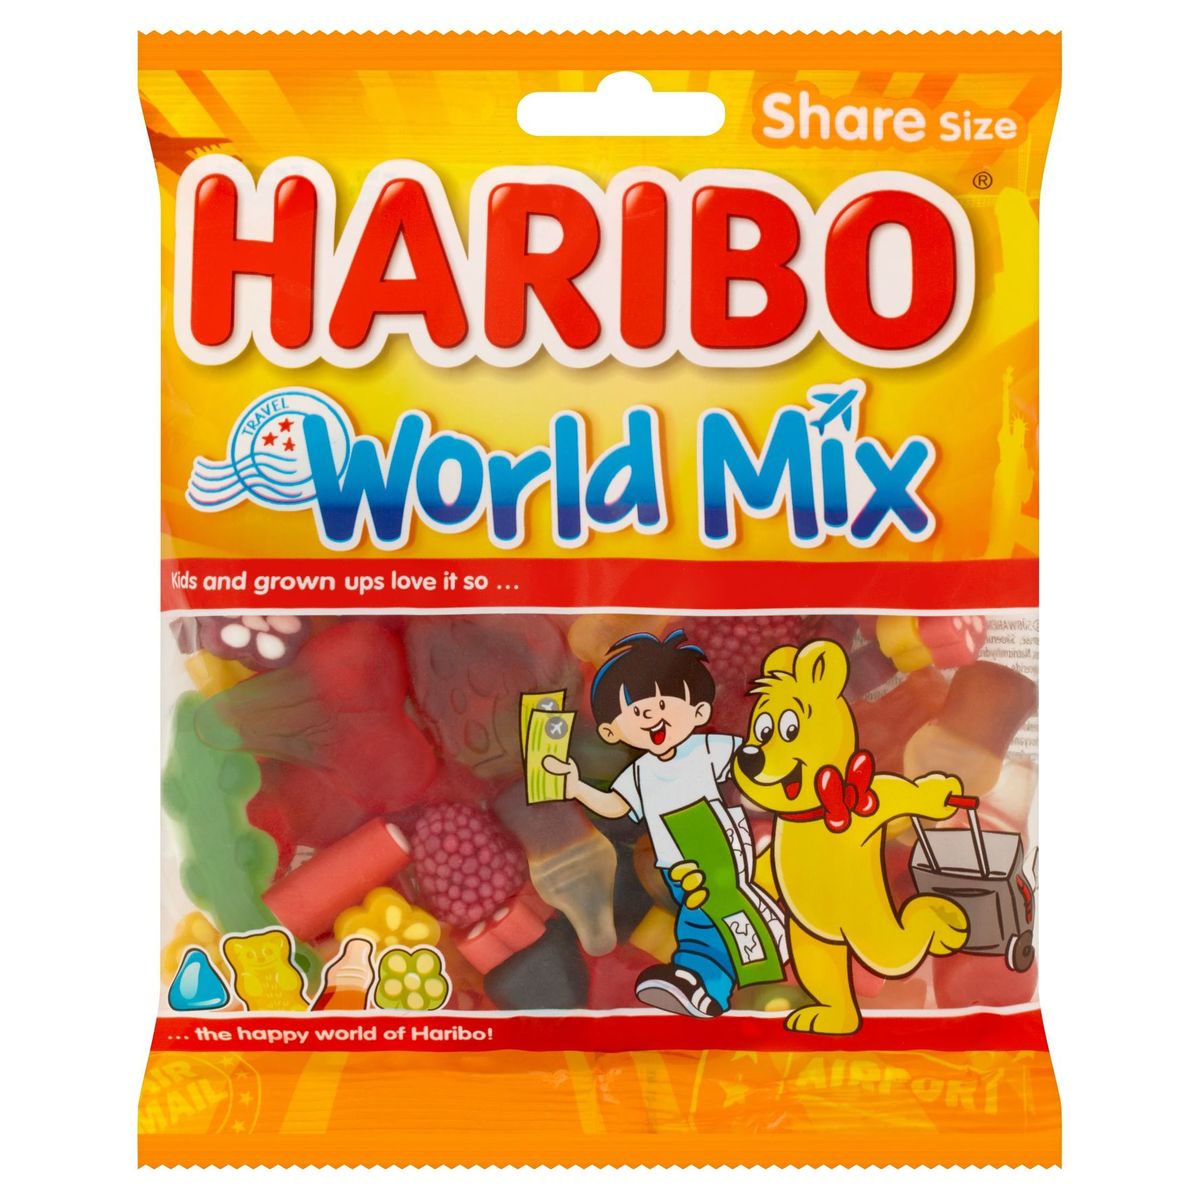 Haribo World Mix Share Size 225 g